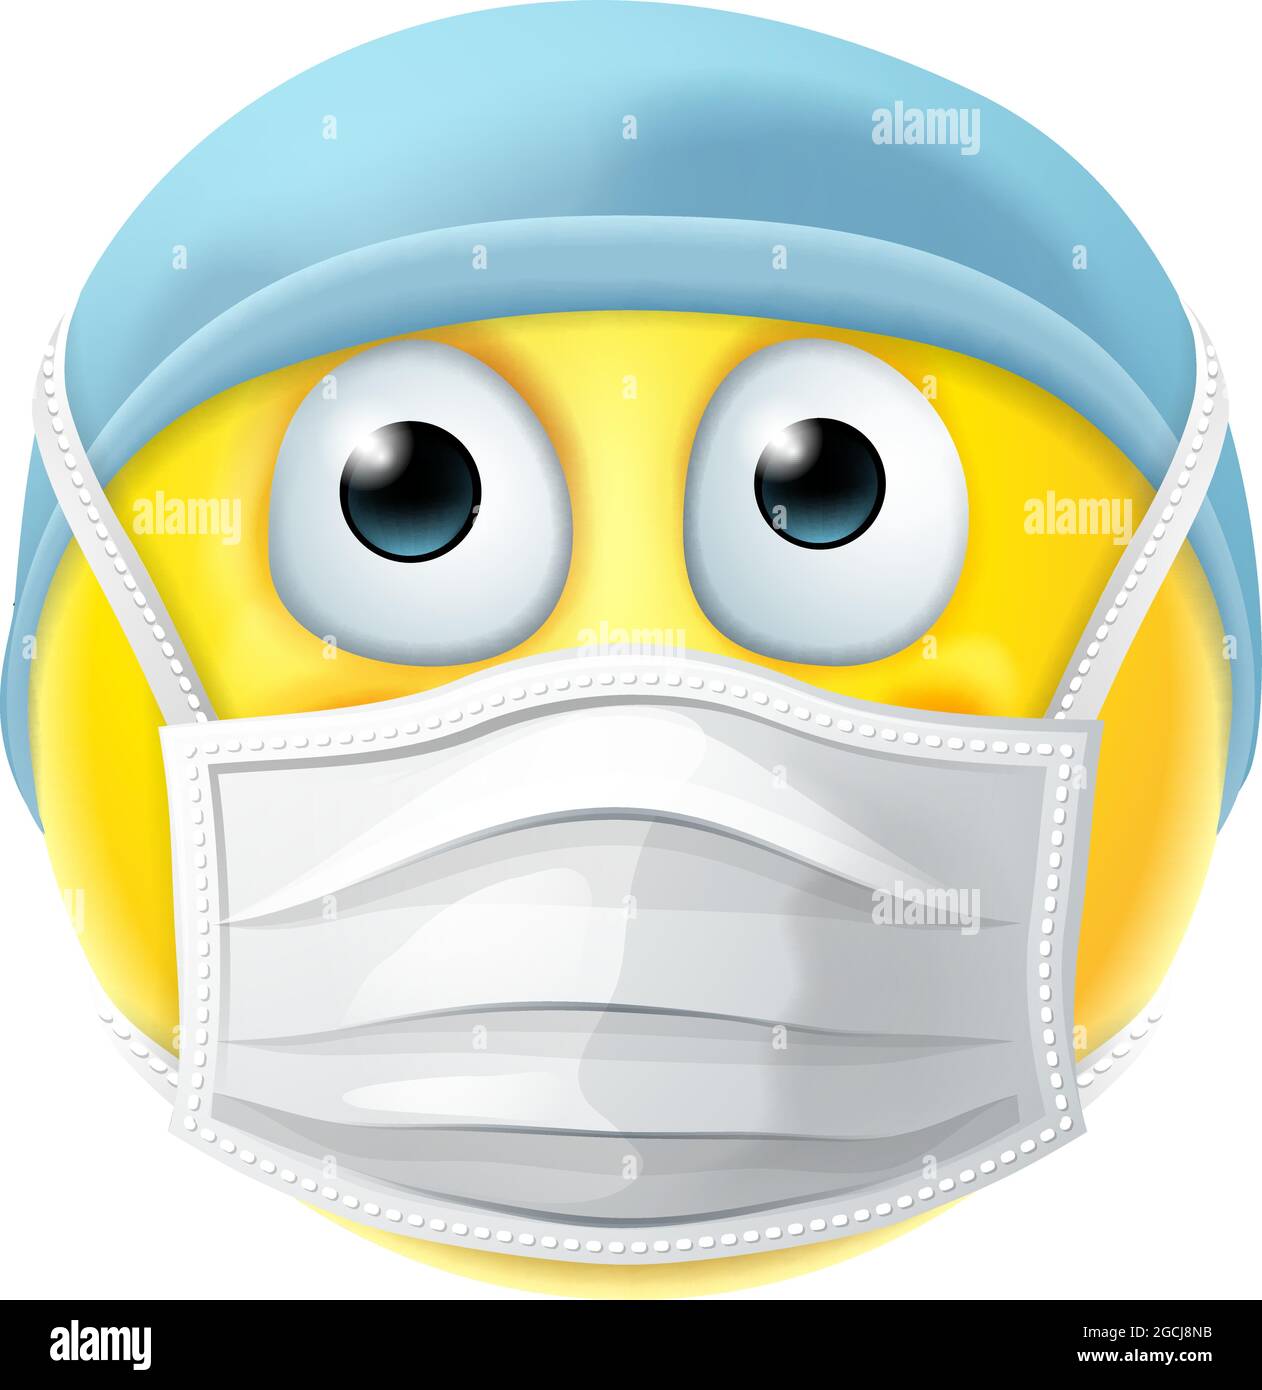 Dottore emoji immagini e fotografie stock ad alta risoluzione - Alamy